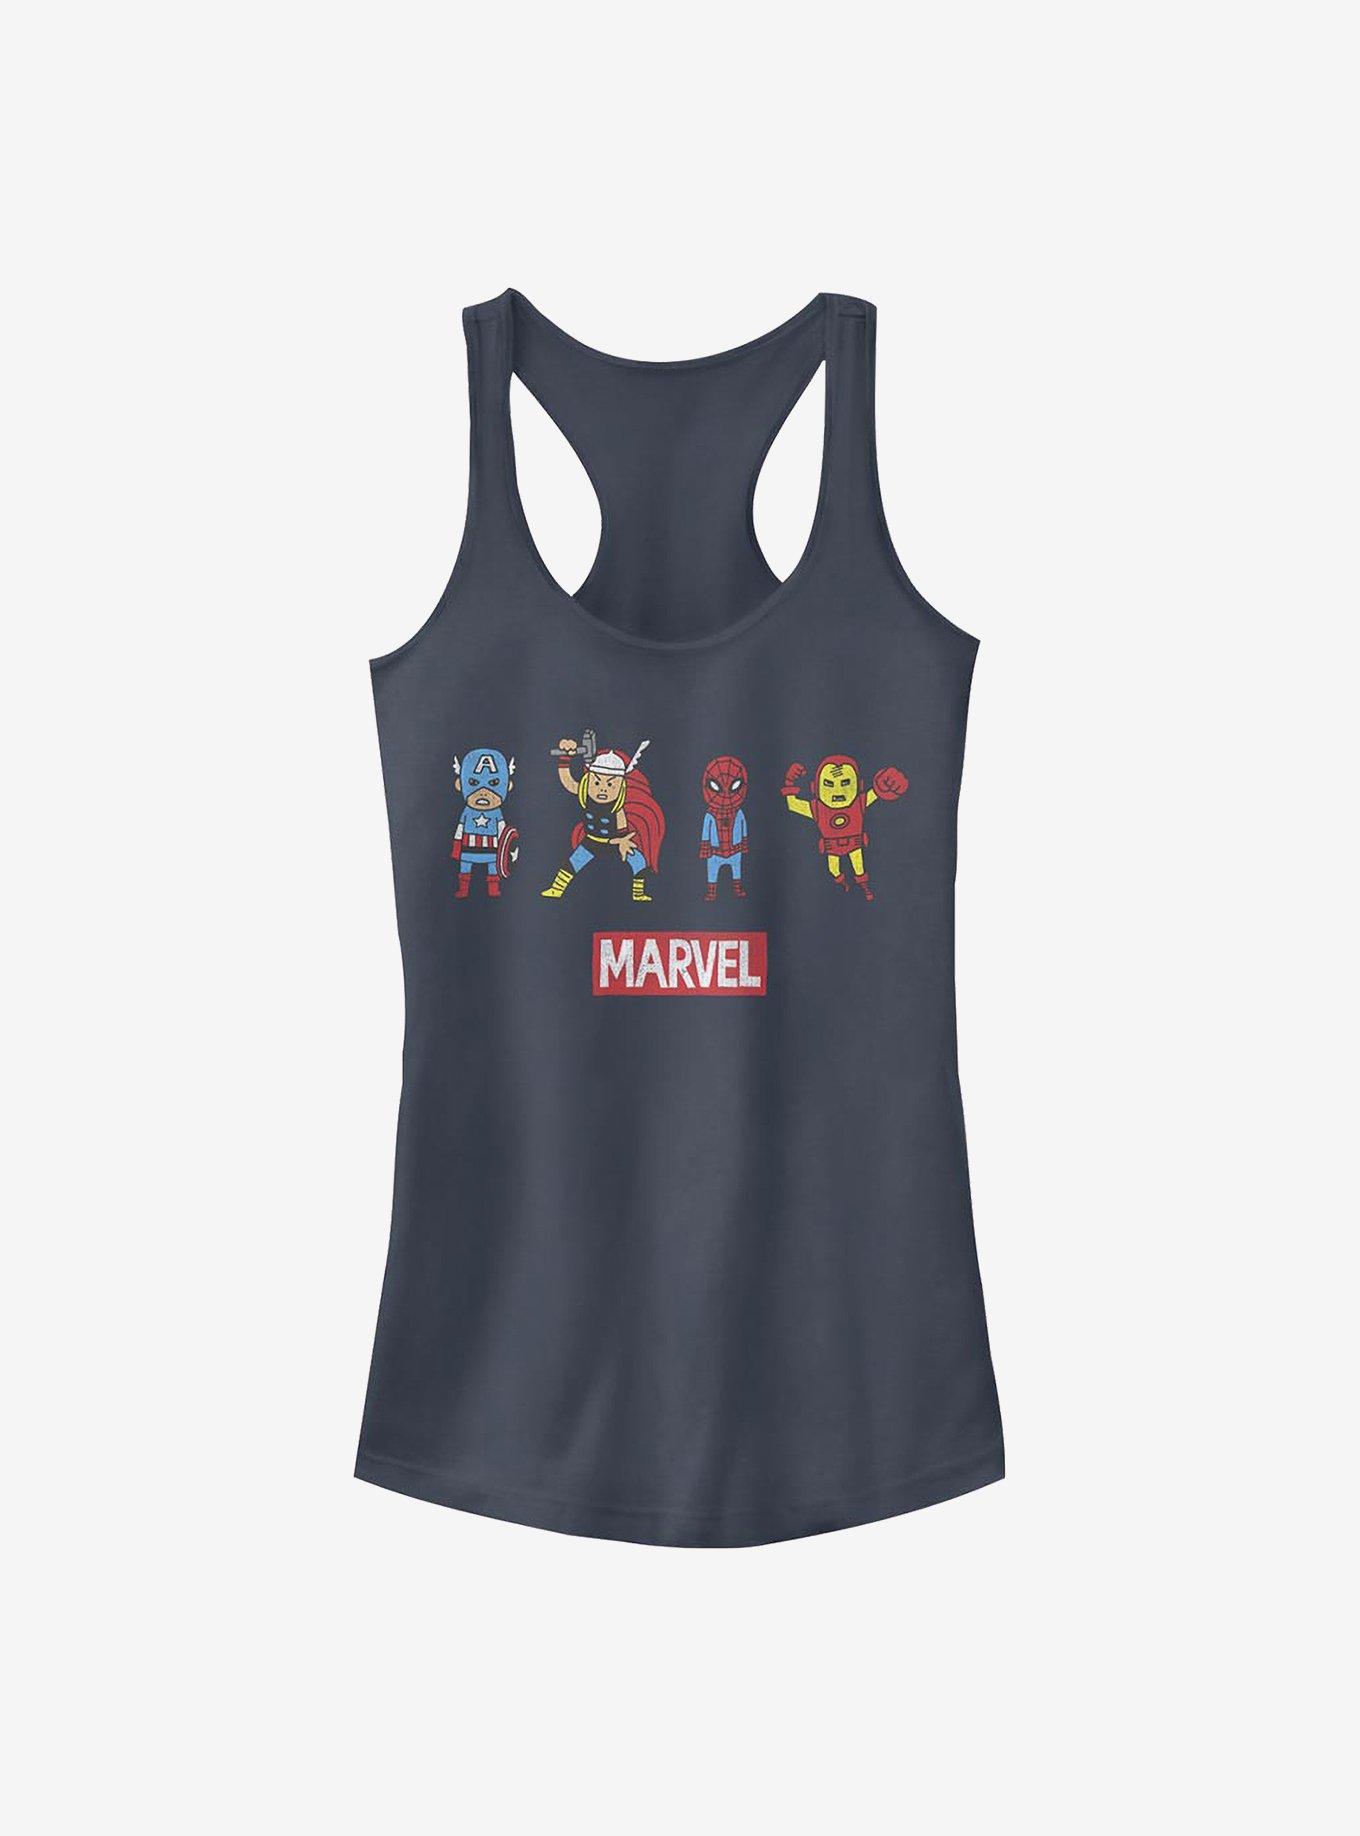 Marvel Avengers Pop Art Group Girls Tank